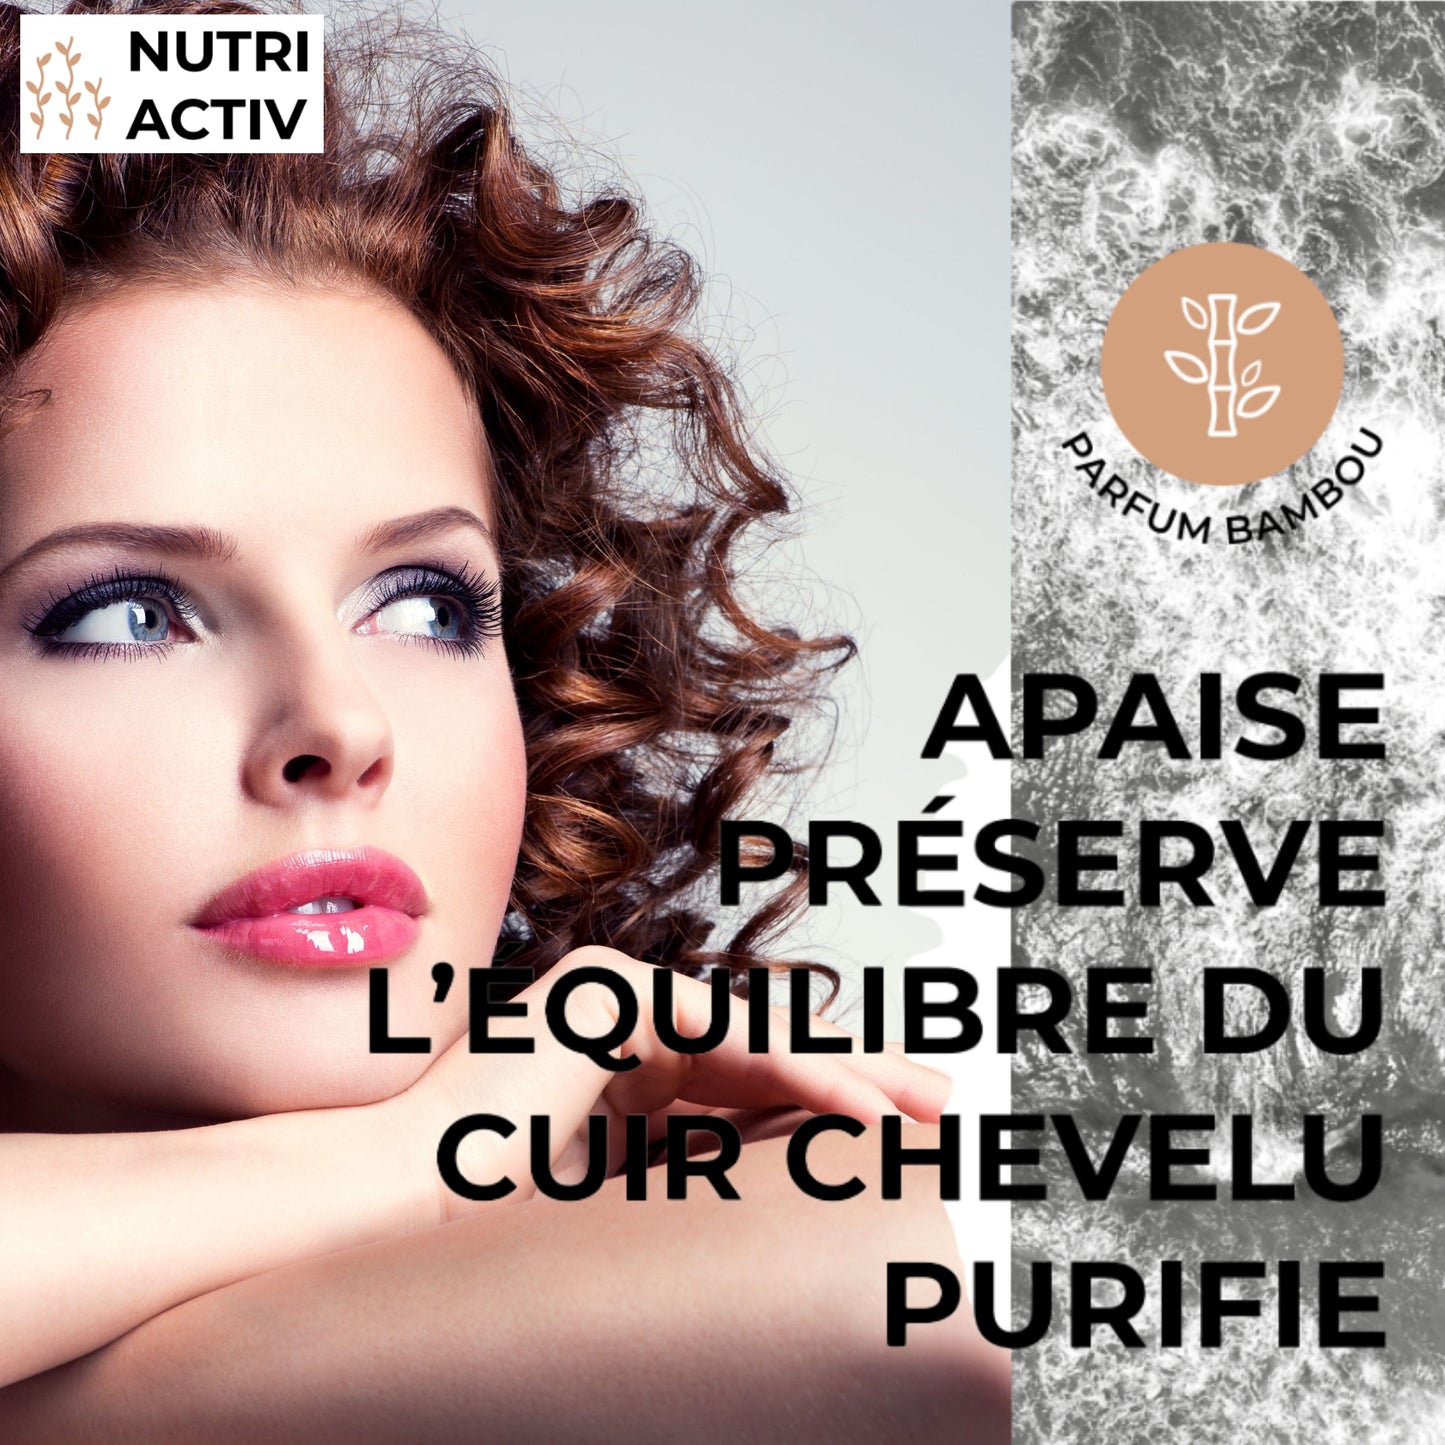 a&s_moncheveu.fr_shampoing_nutri activ_cheveux_à_tendance_grasse